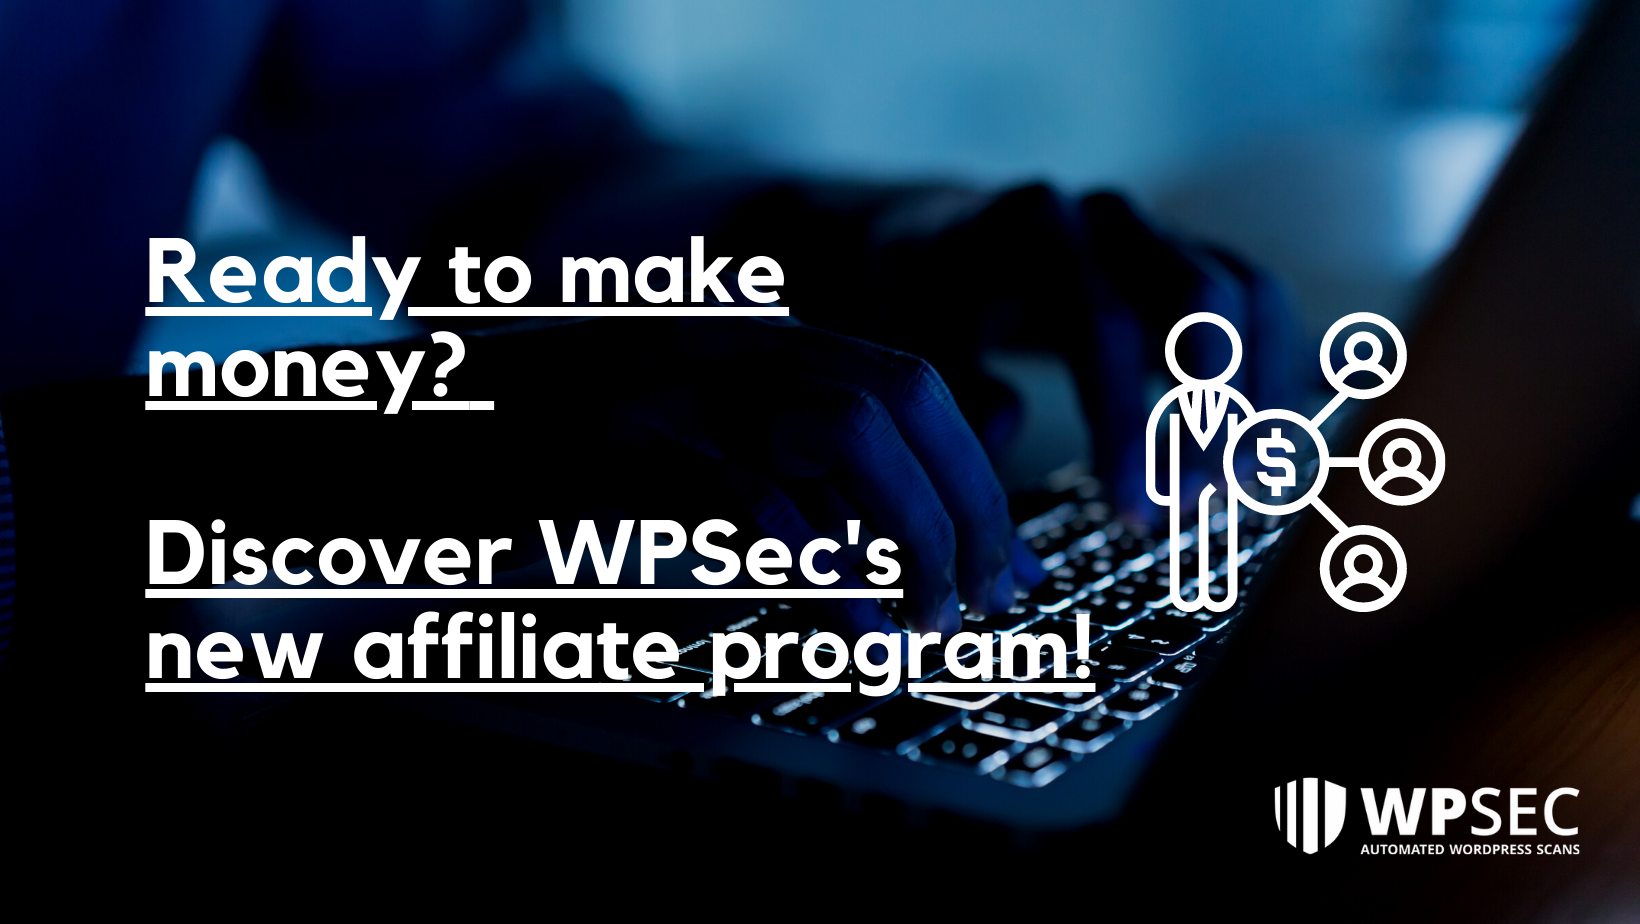 Ready to make money? Discover WPSec's affiliate program!